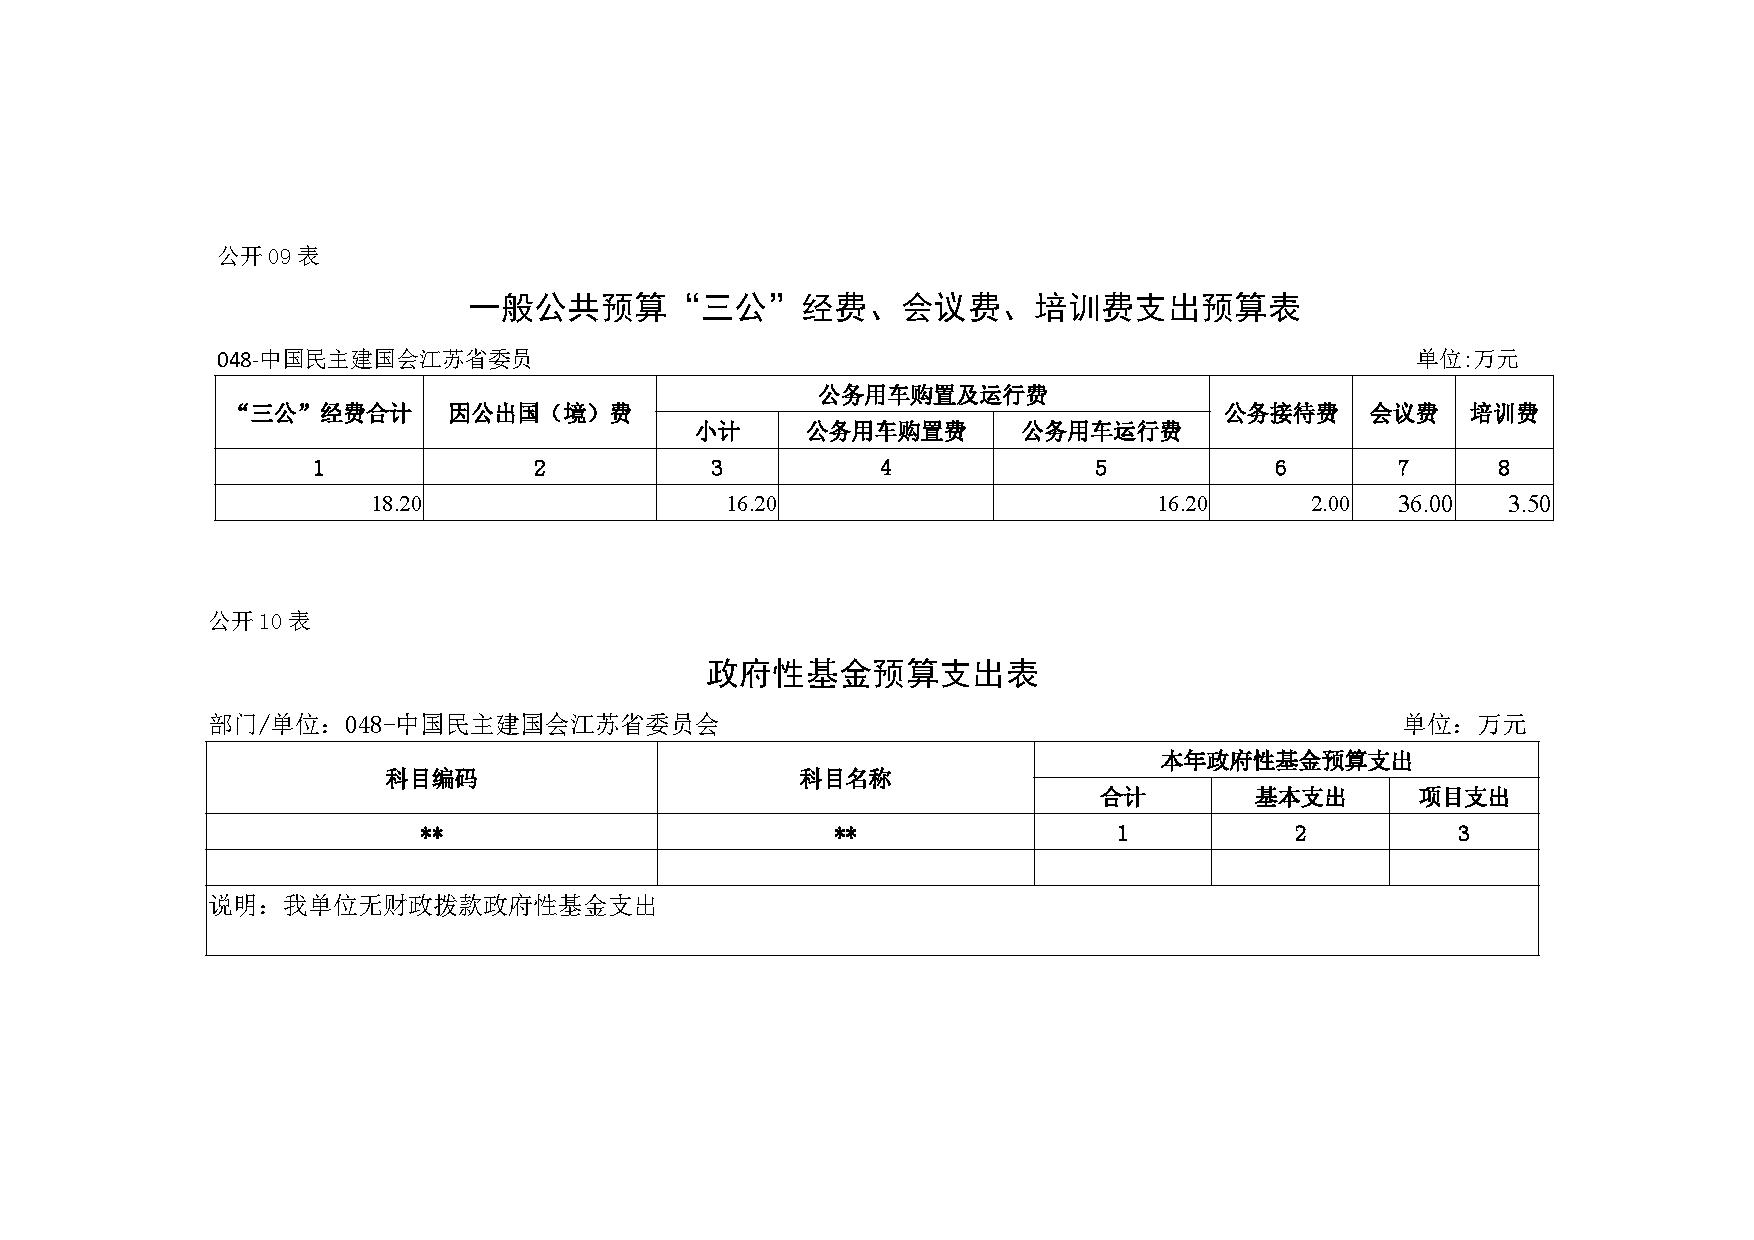 2021年度中国民主建国会江苏省委员会部门预算公开-18.jpg